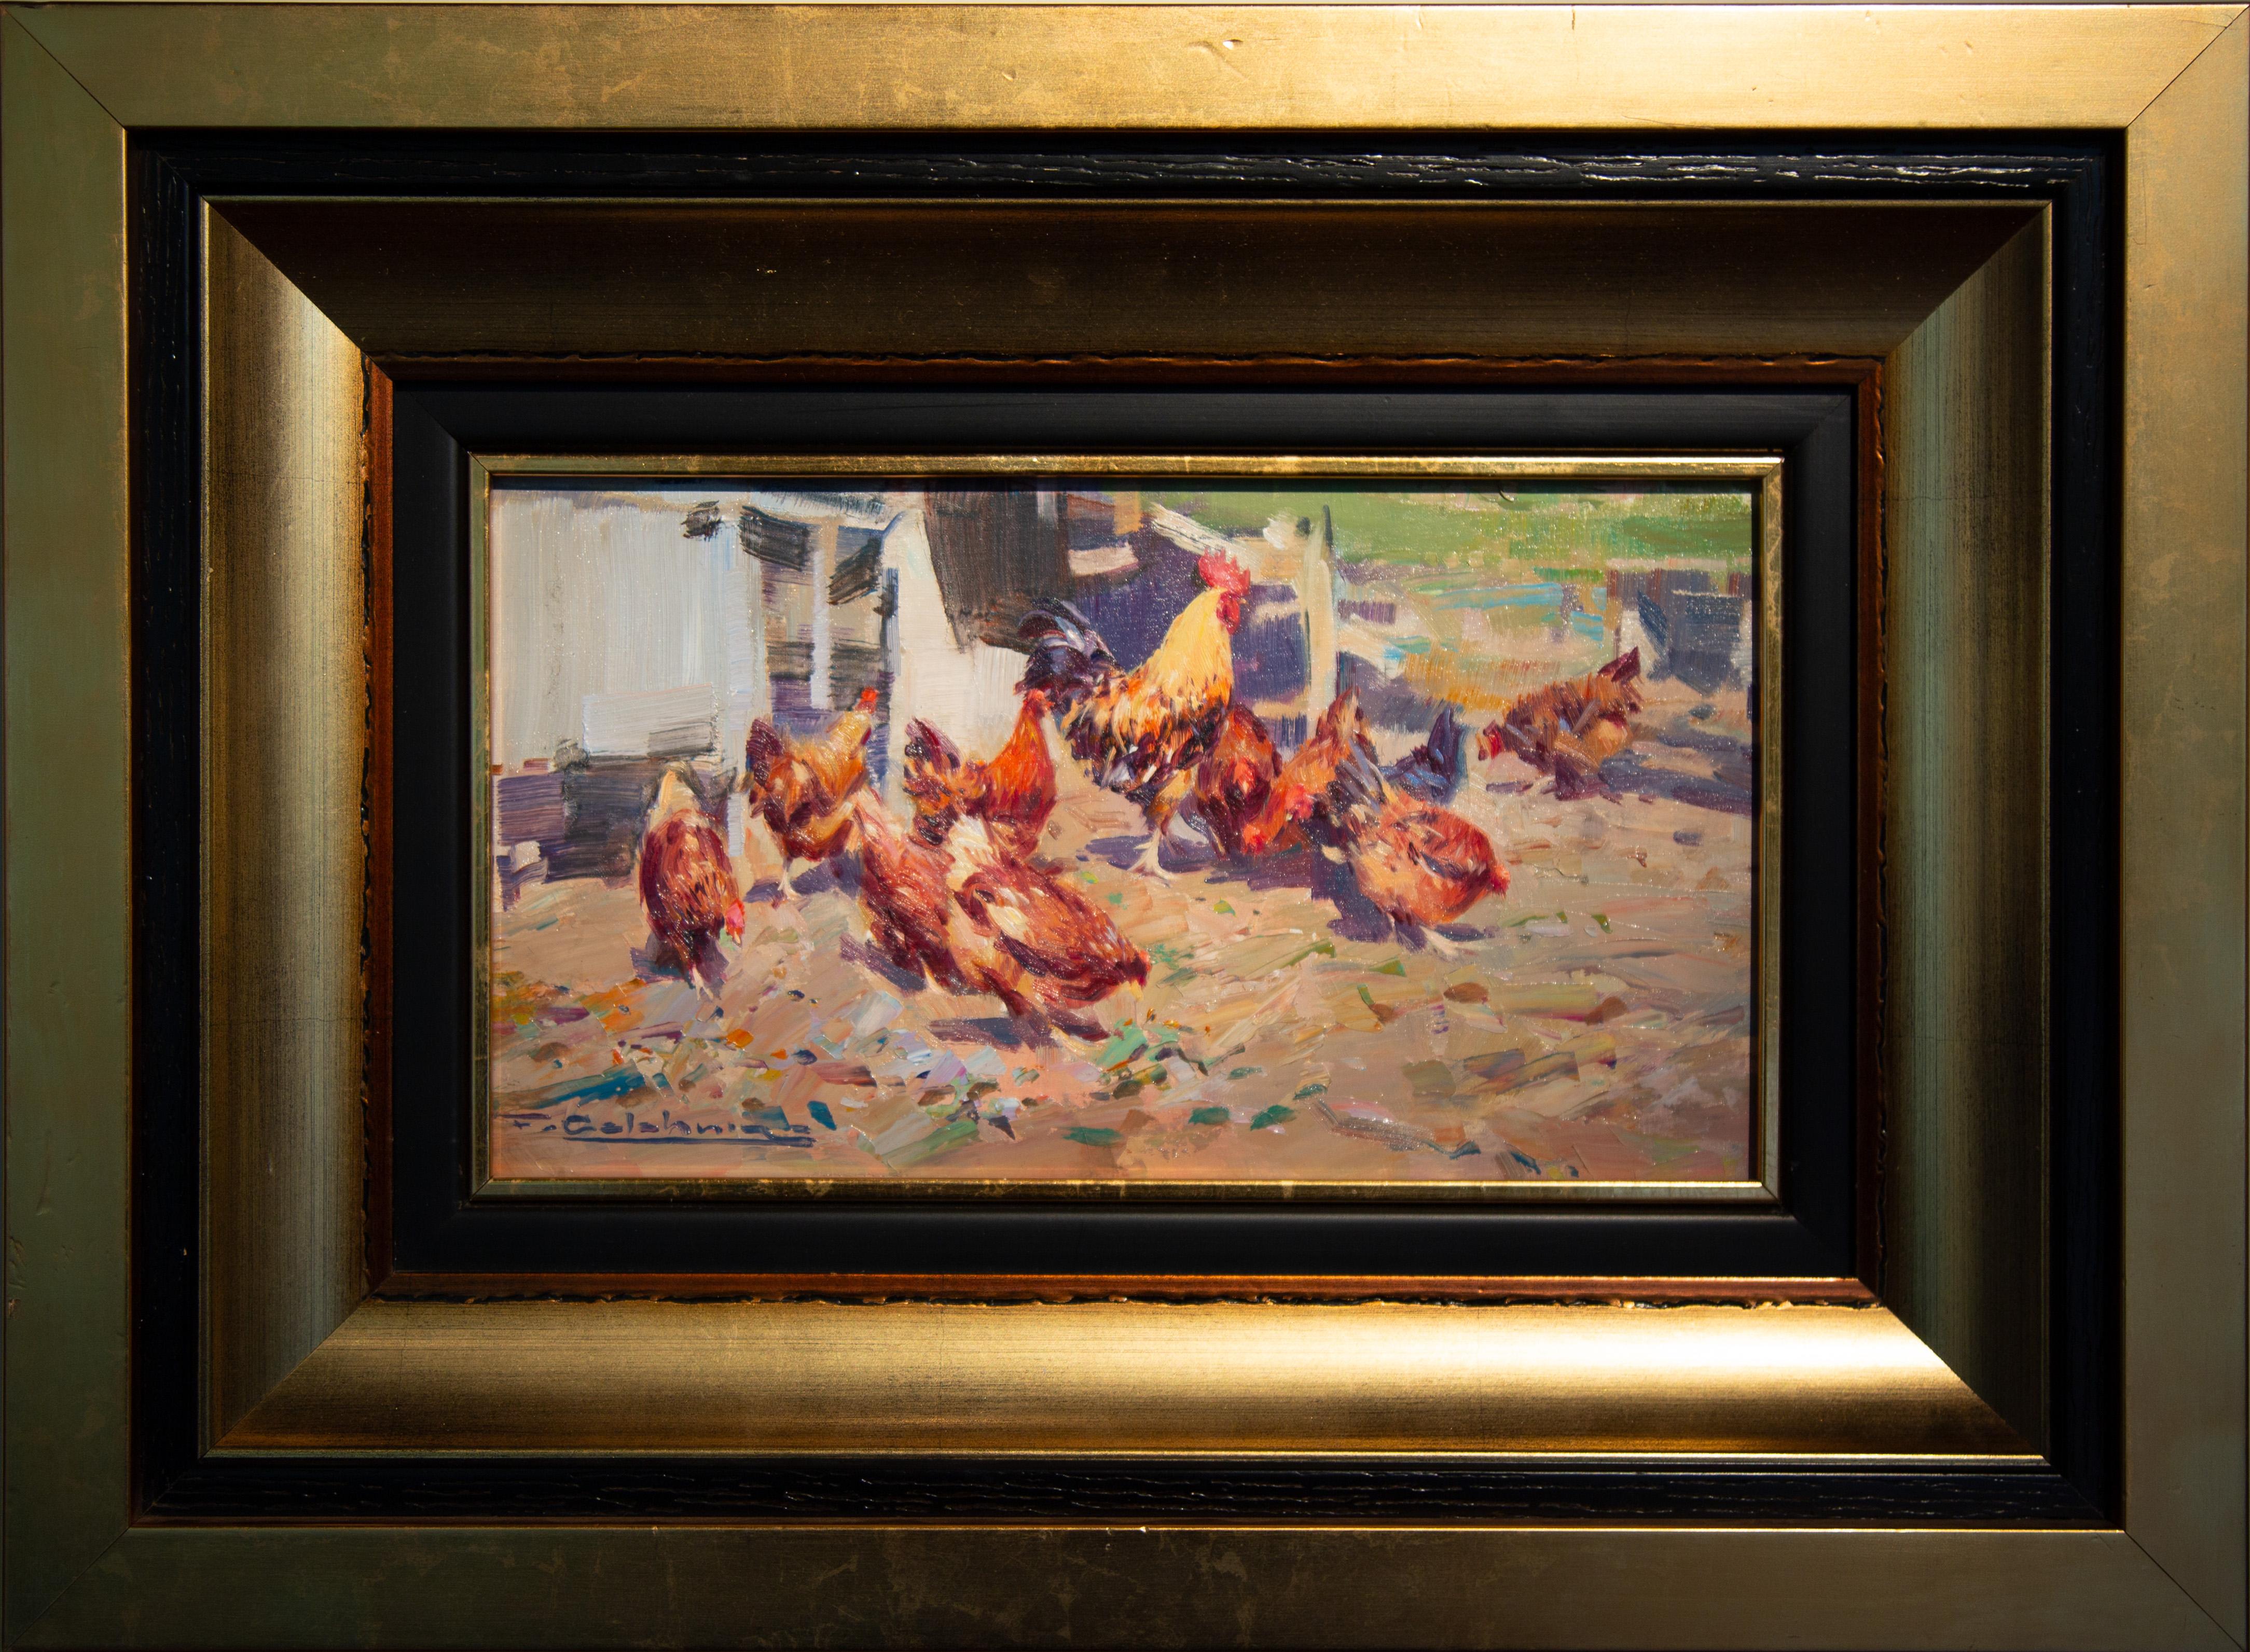 Animal Painting Francisco Calabuig - The Farmyard' Peinture contemporaine représentant des poules et un coq dans un décor de ferme.